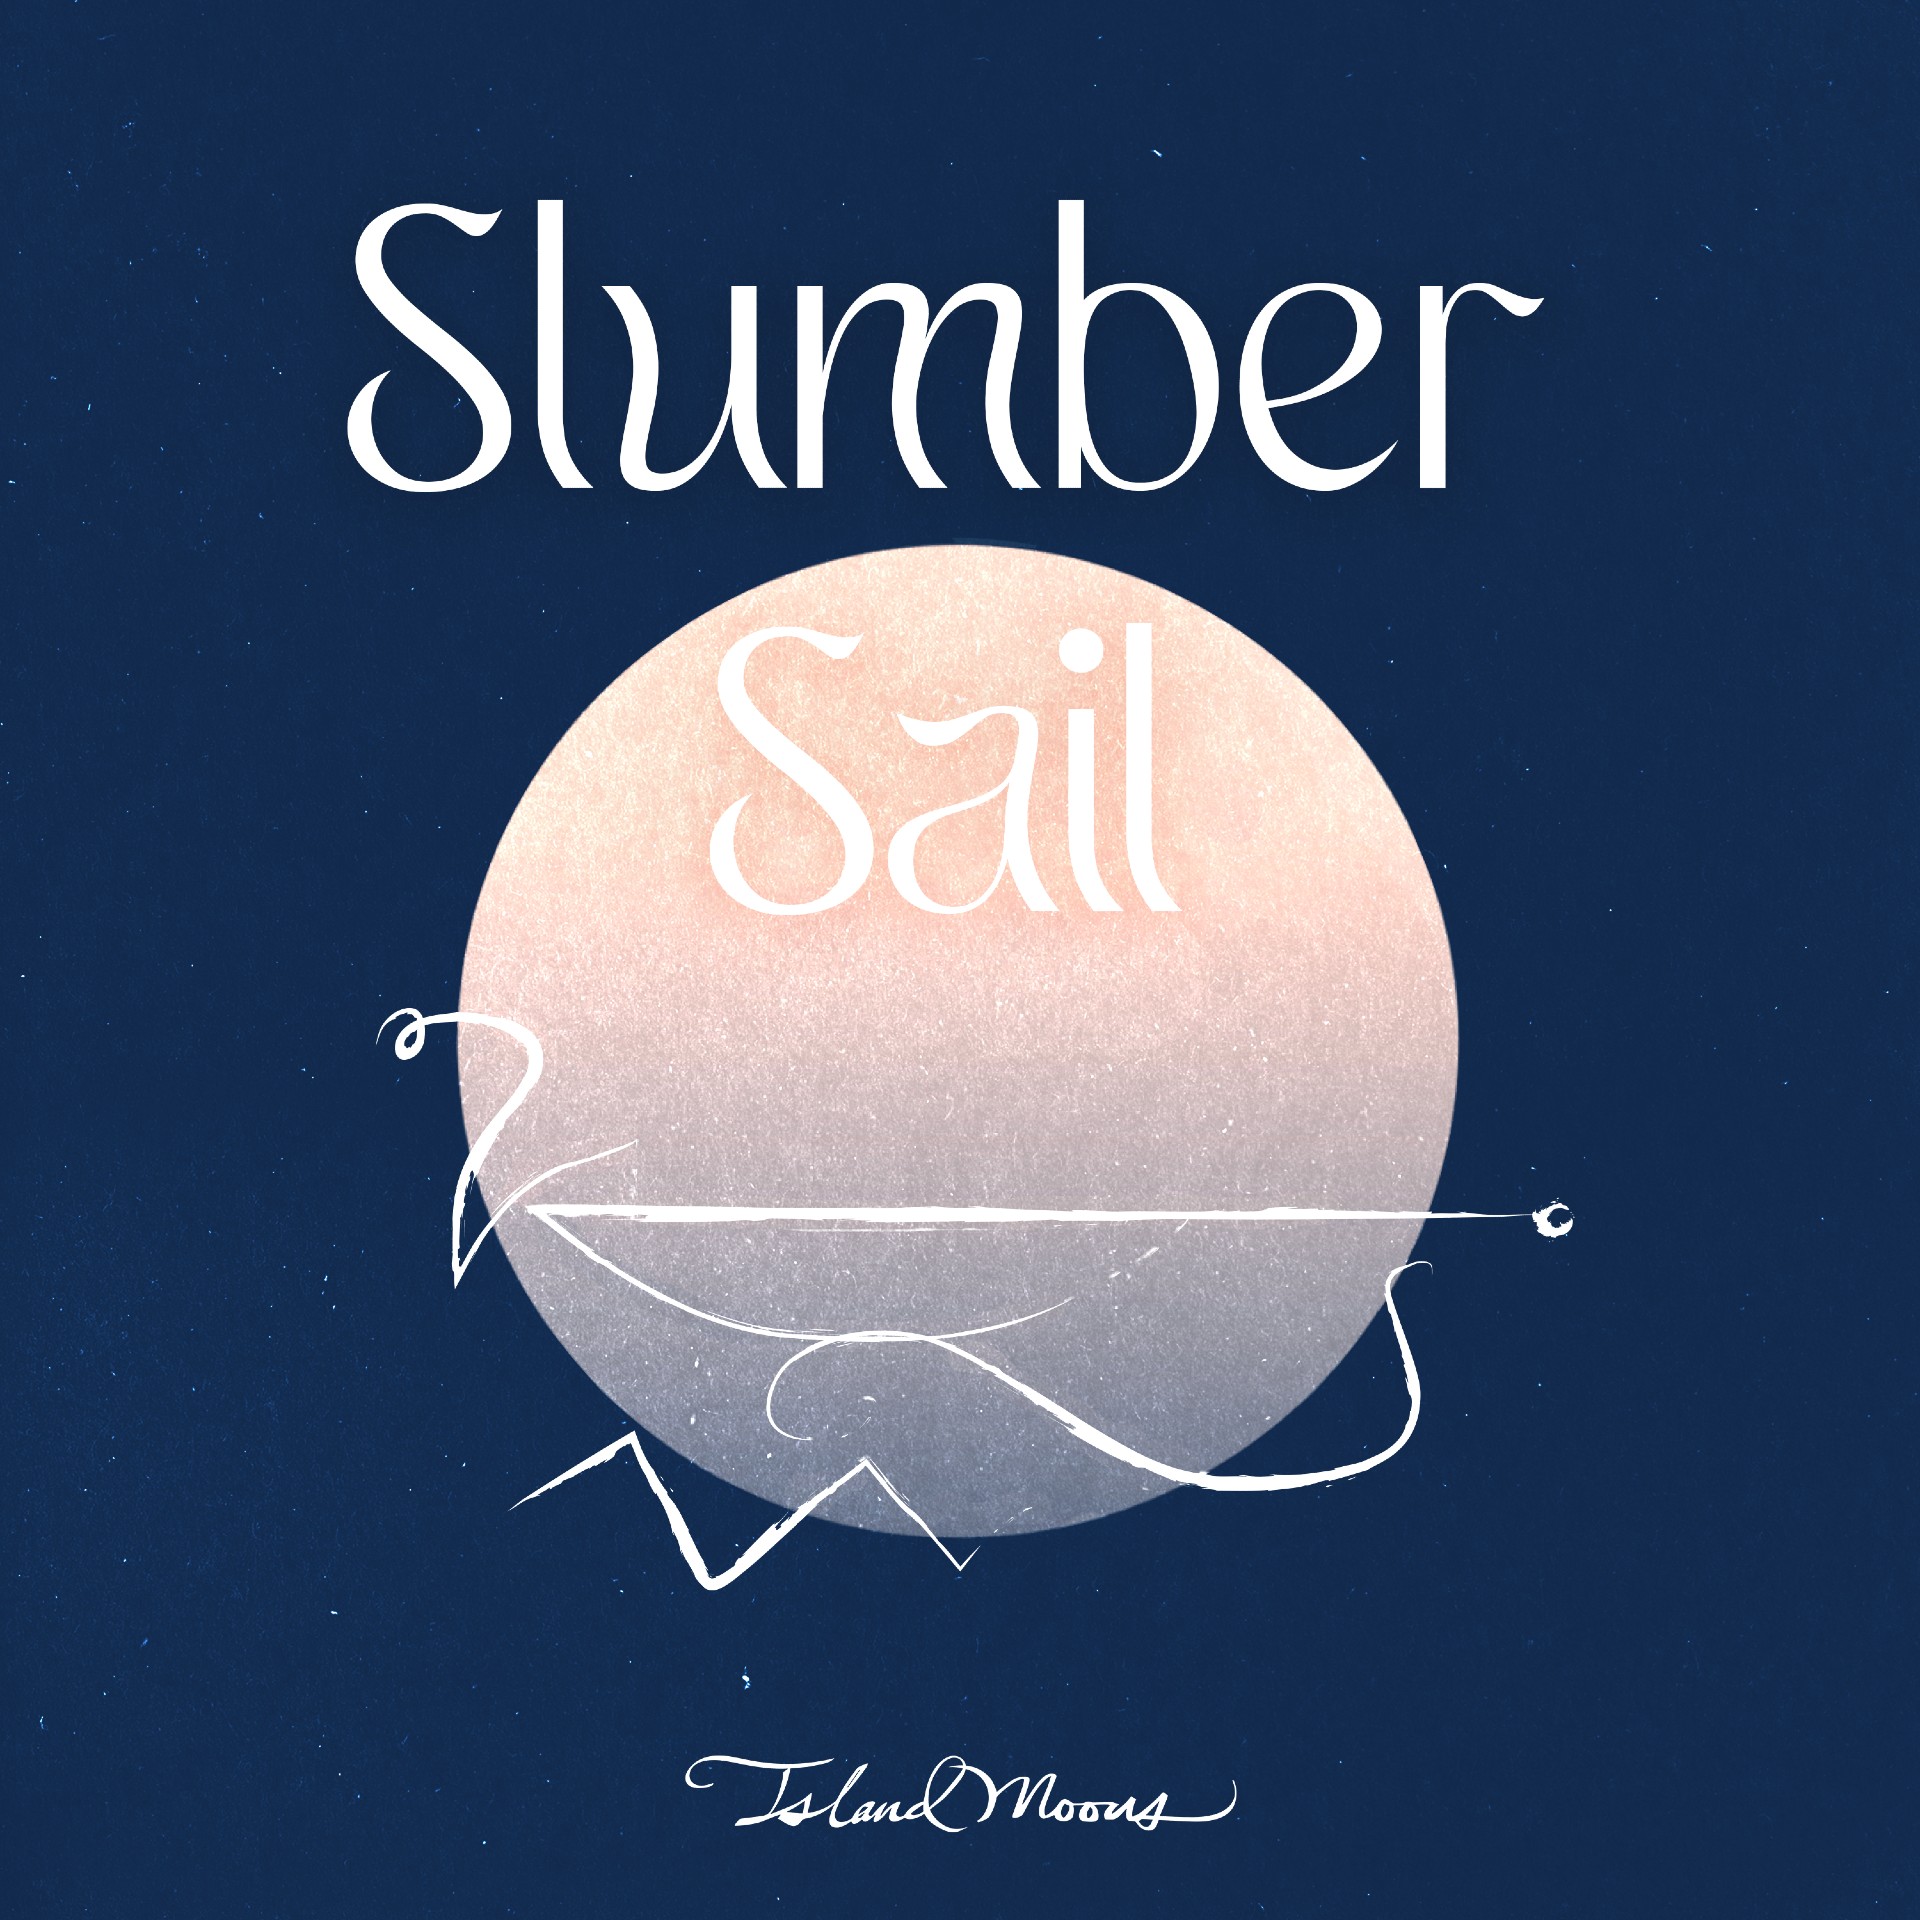 Island Moons “Slumber Sail” single artwork